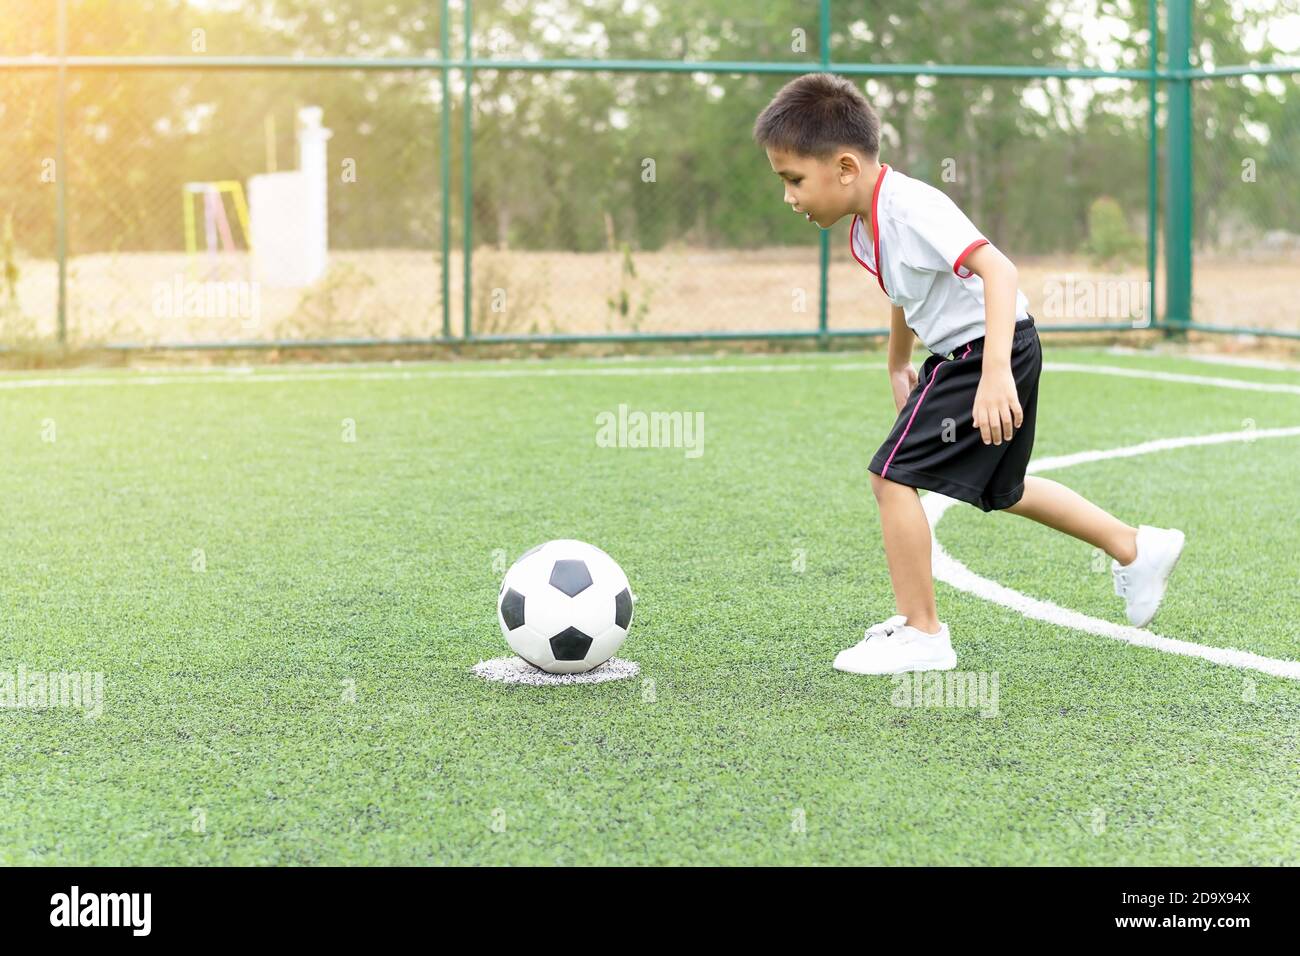 Le garçon jouait au football sur le terrain de football avec bonheur. Banque D'Images